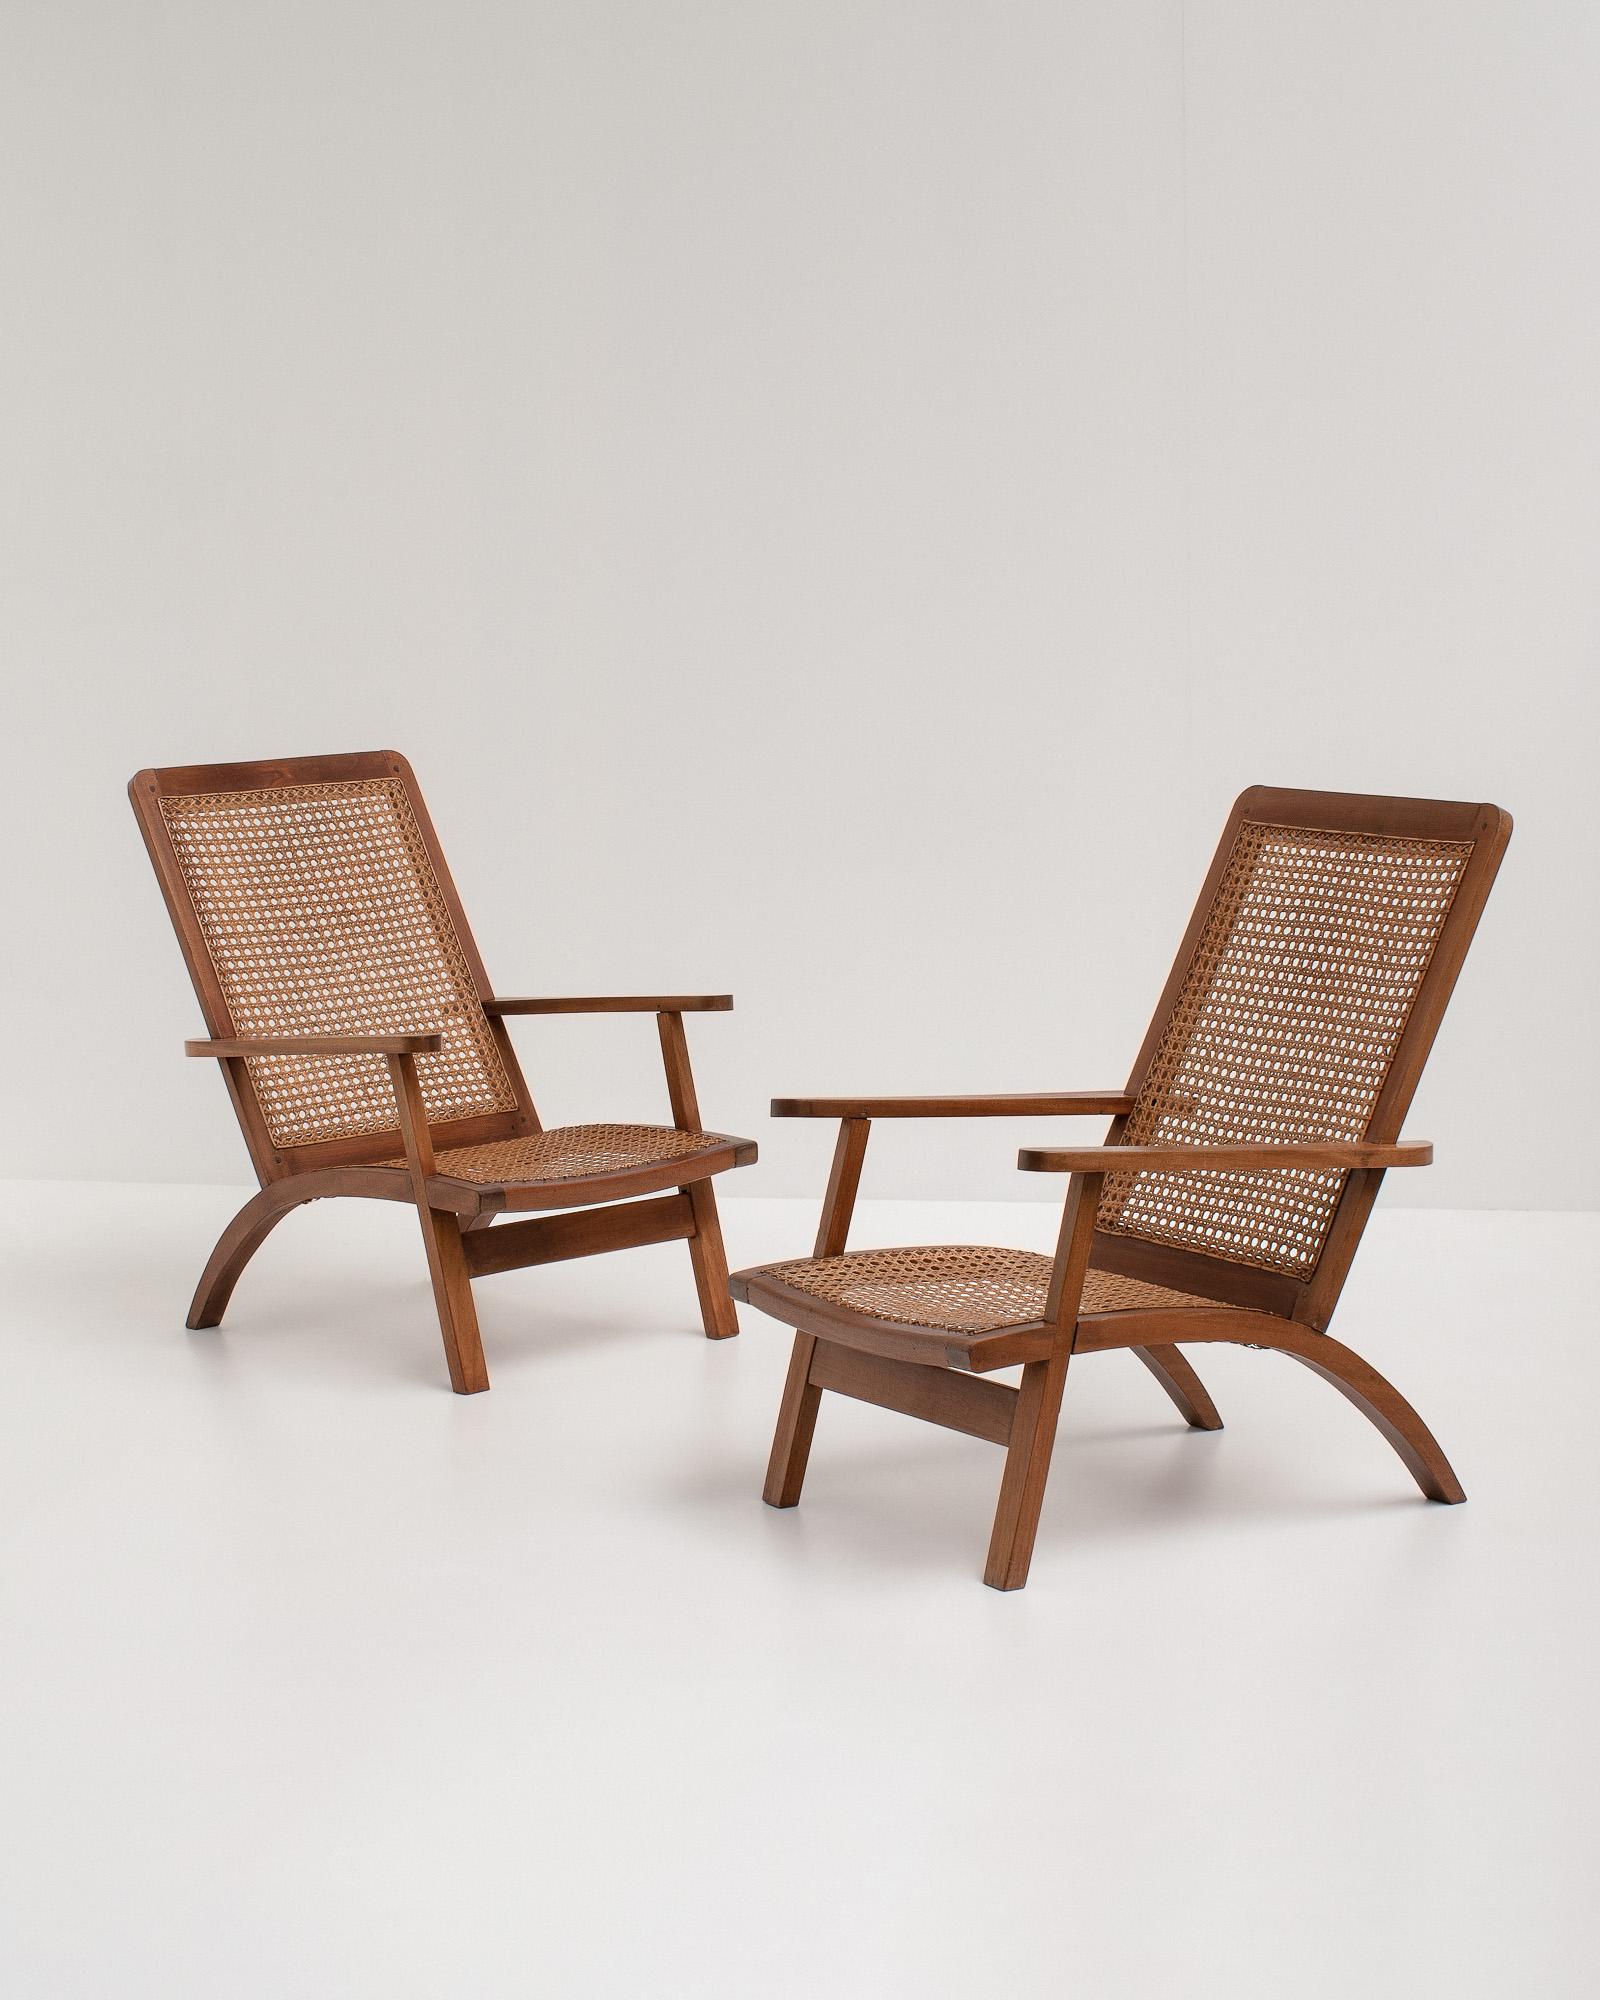 Paire d'étonnants fauteuils français sculpturaux du milieu du siècle en acajou avec assise et dossier cannés. Les détails et l'artisanat rehaussent le design. Néanmoins, ils sont très confortables à utiliser. 

Les chaises ont été restaurées et